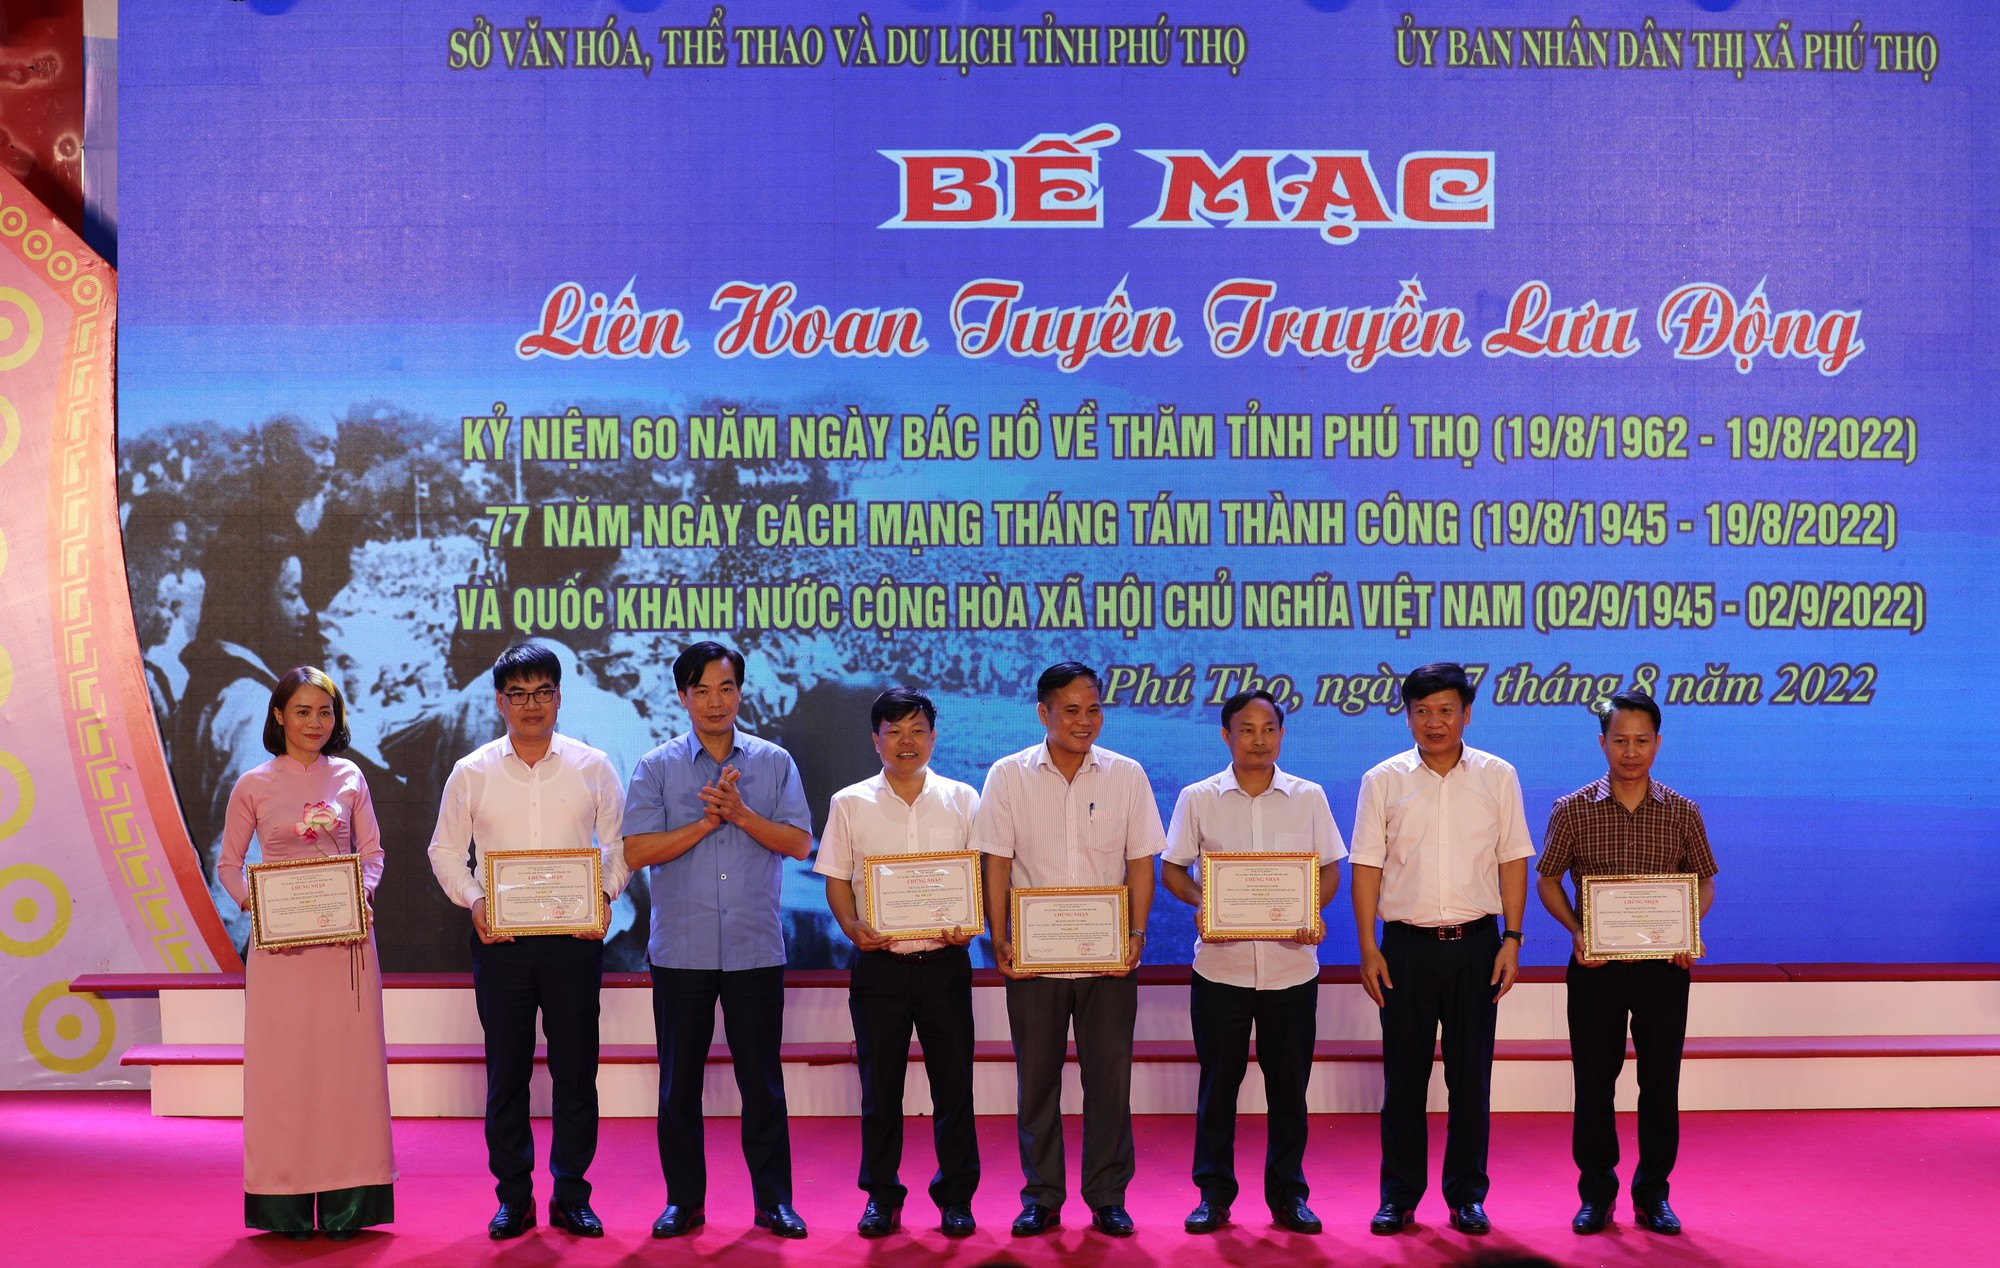 Phú Thọ tổ chức liên hoan tuyên truyền lưu động và Triển lãm tranh cổ động kỷ niệm 60 năm ngày Bác Hồ về thăm tỉnh Phú Thọ - Ảnh 1.